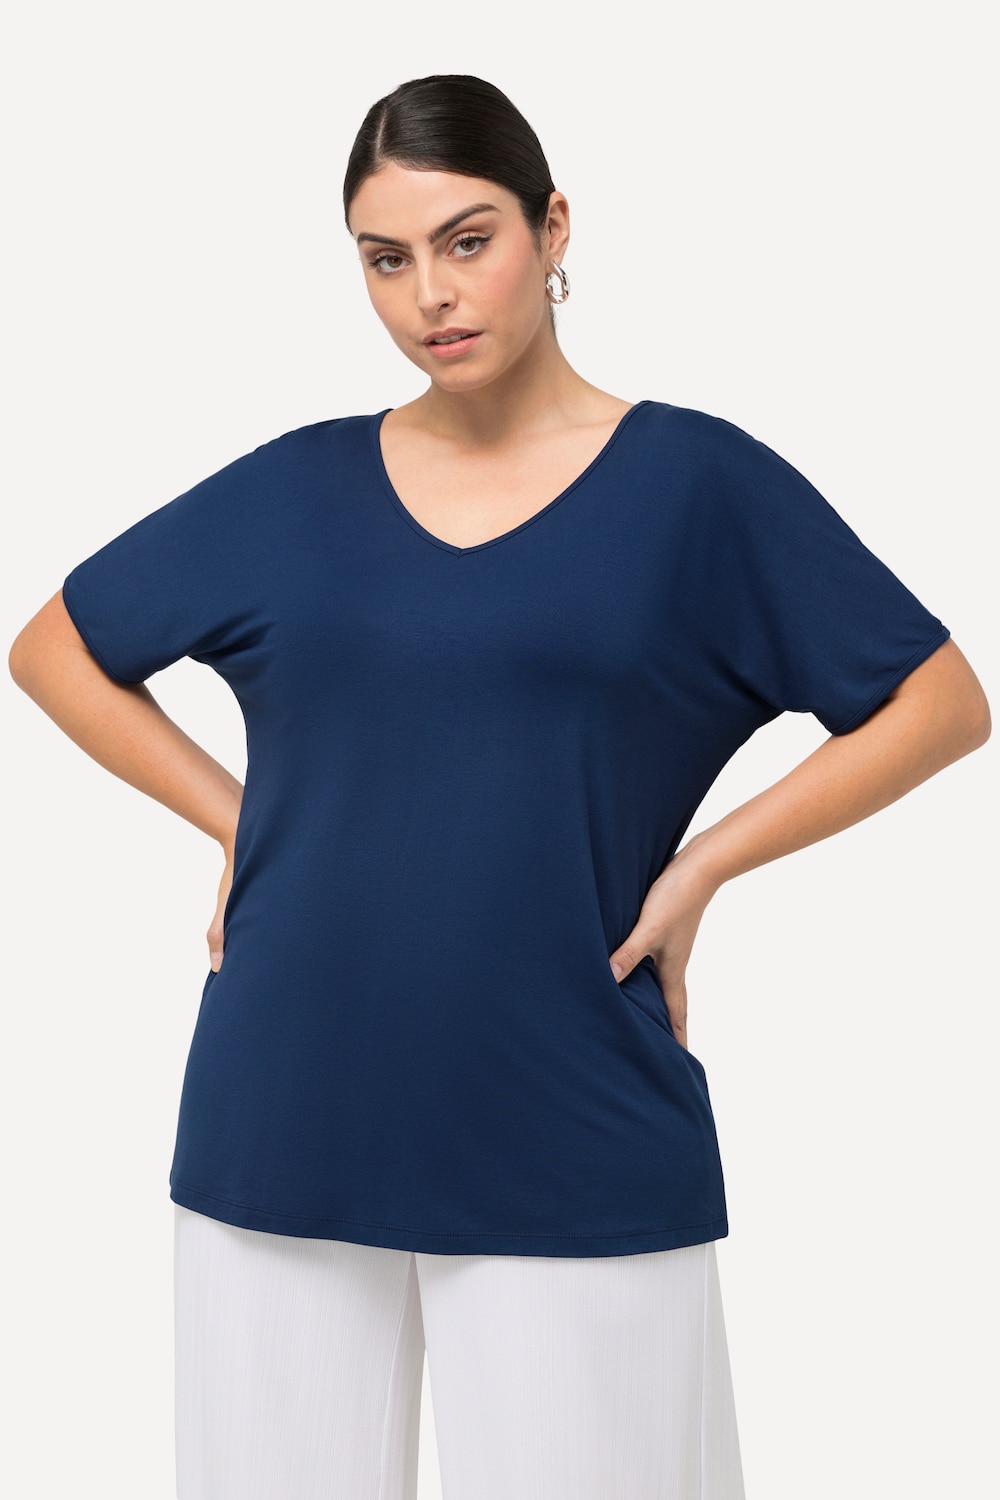 Grote Maten T-shirt, Dames, blauw, Maat: 50/52, Viscose, Ulla Popken